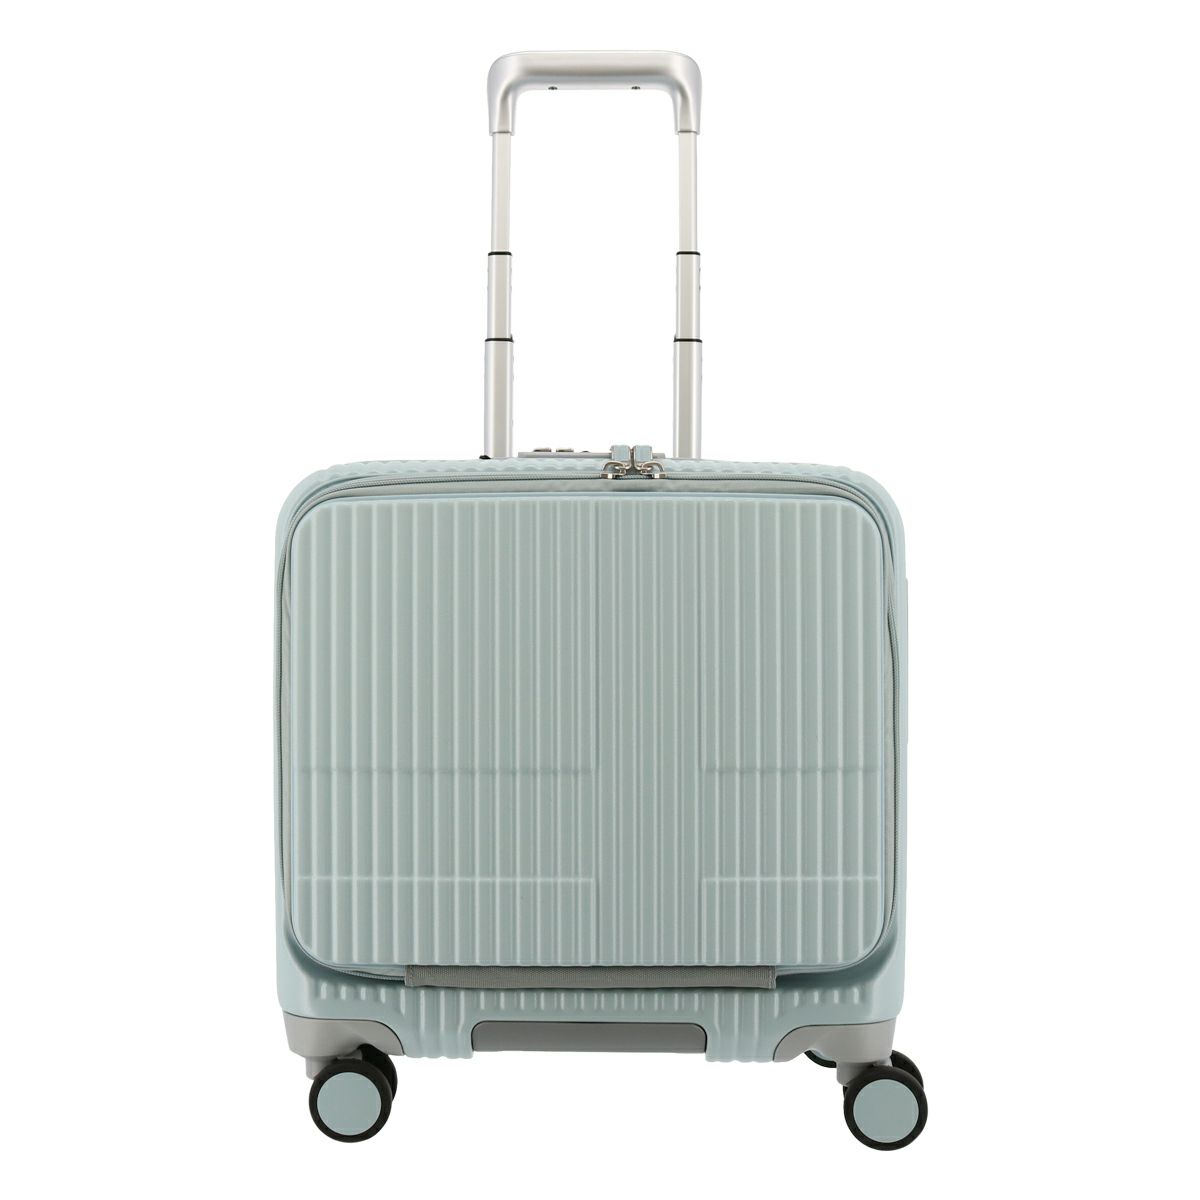 人気の[イノベーター] スーツケース 機内持ち込み 多機能pカラーモデル バッグ